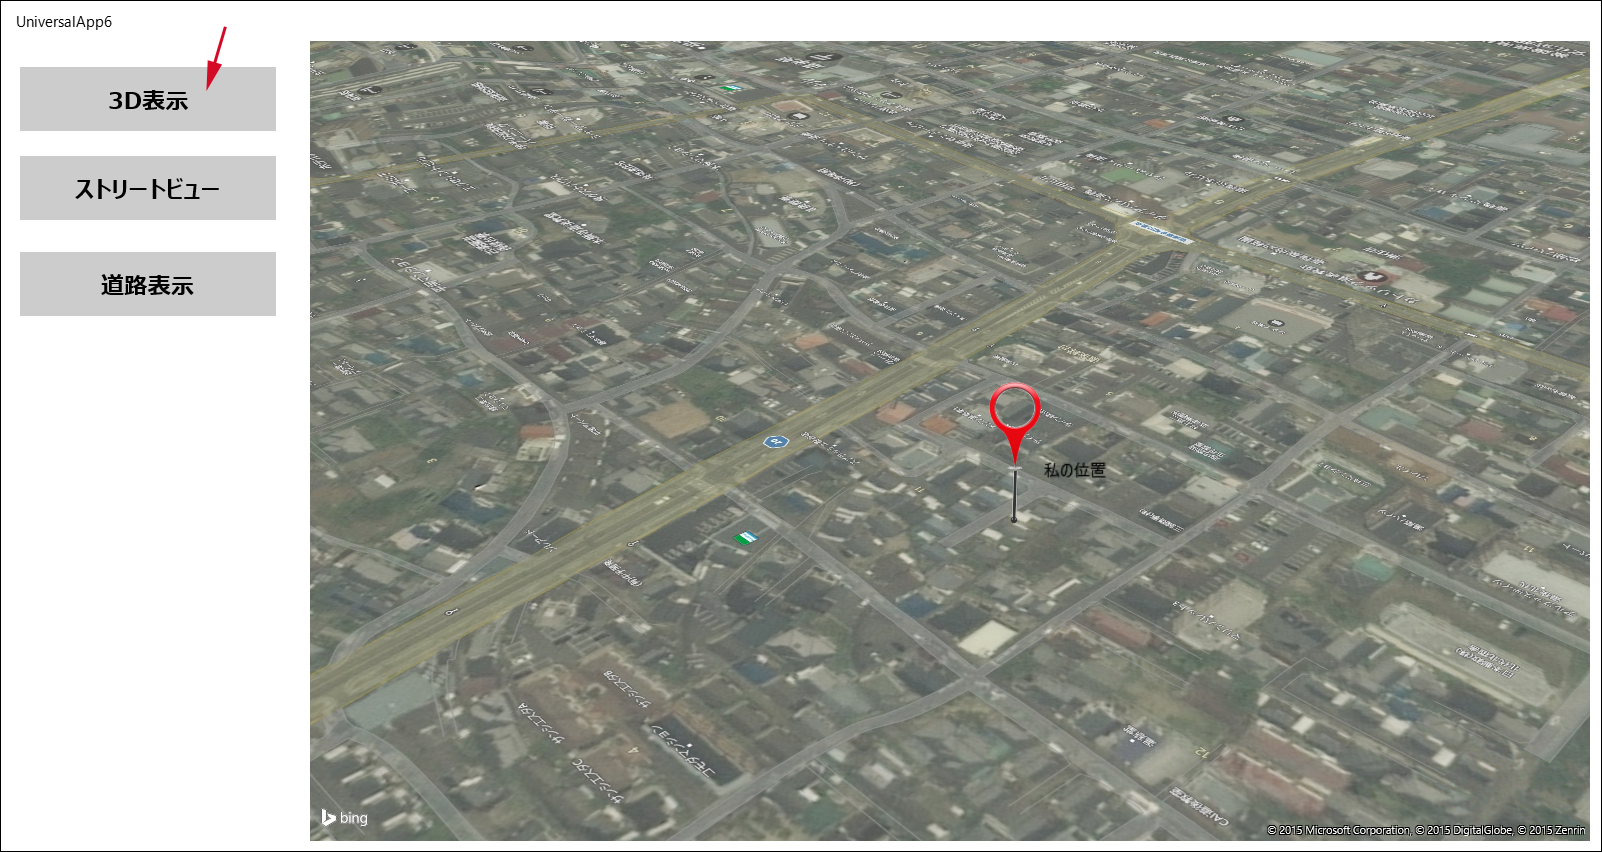 松山市道後近辺が3D表示になった